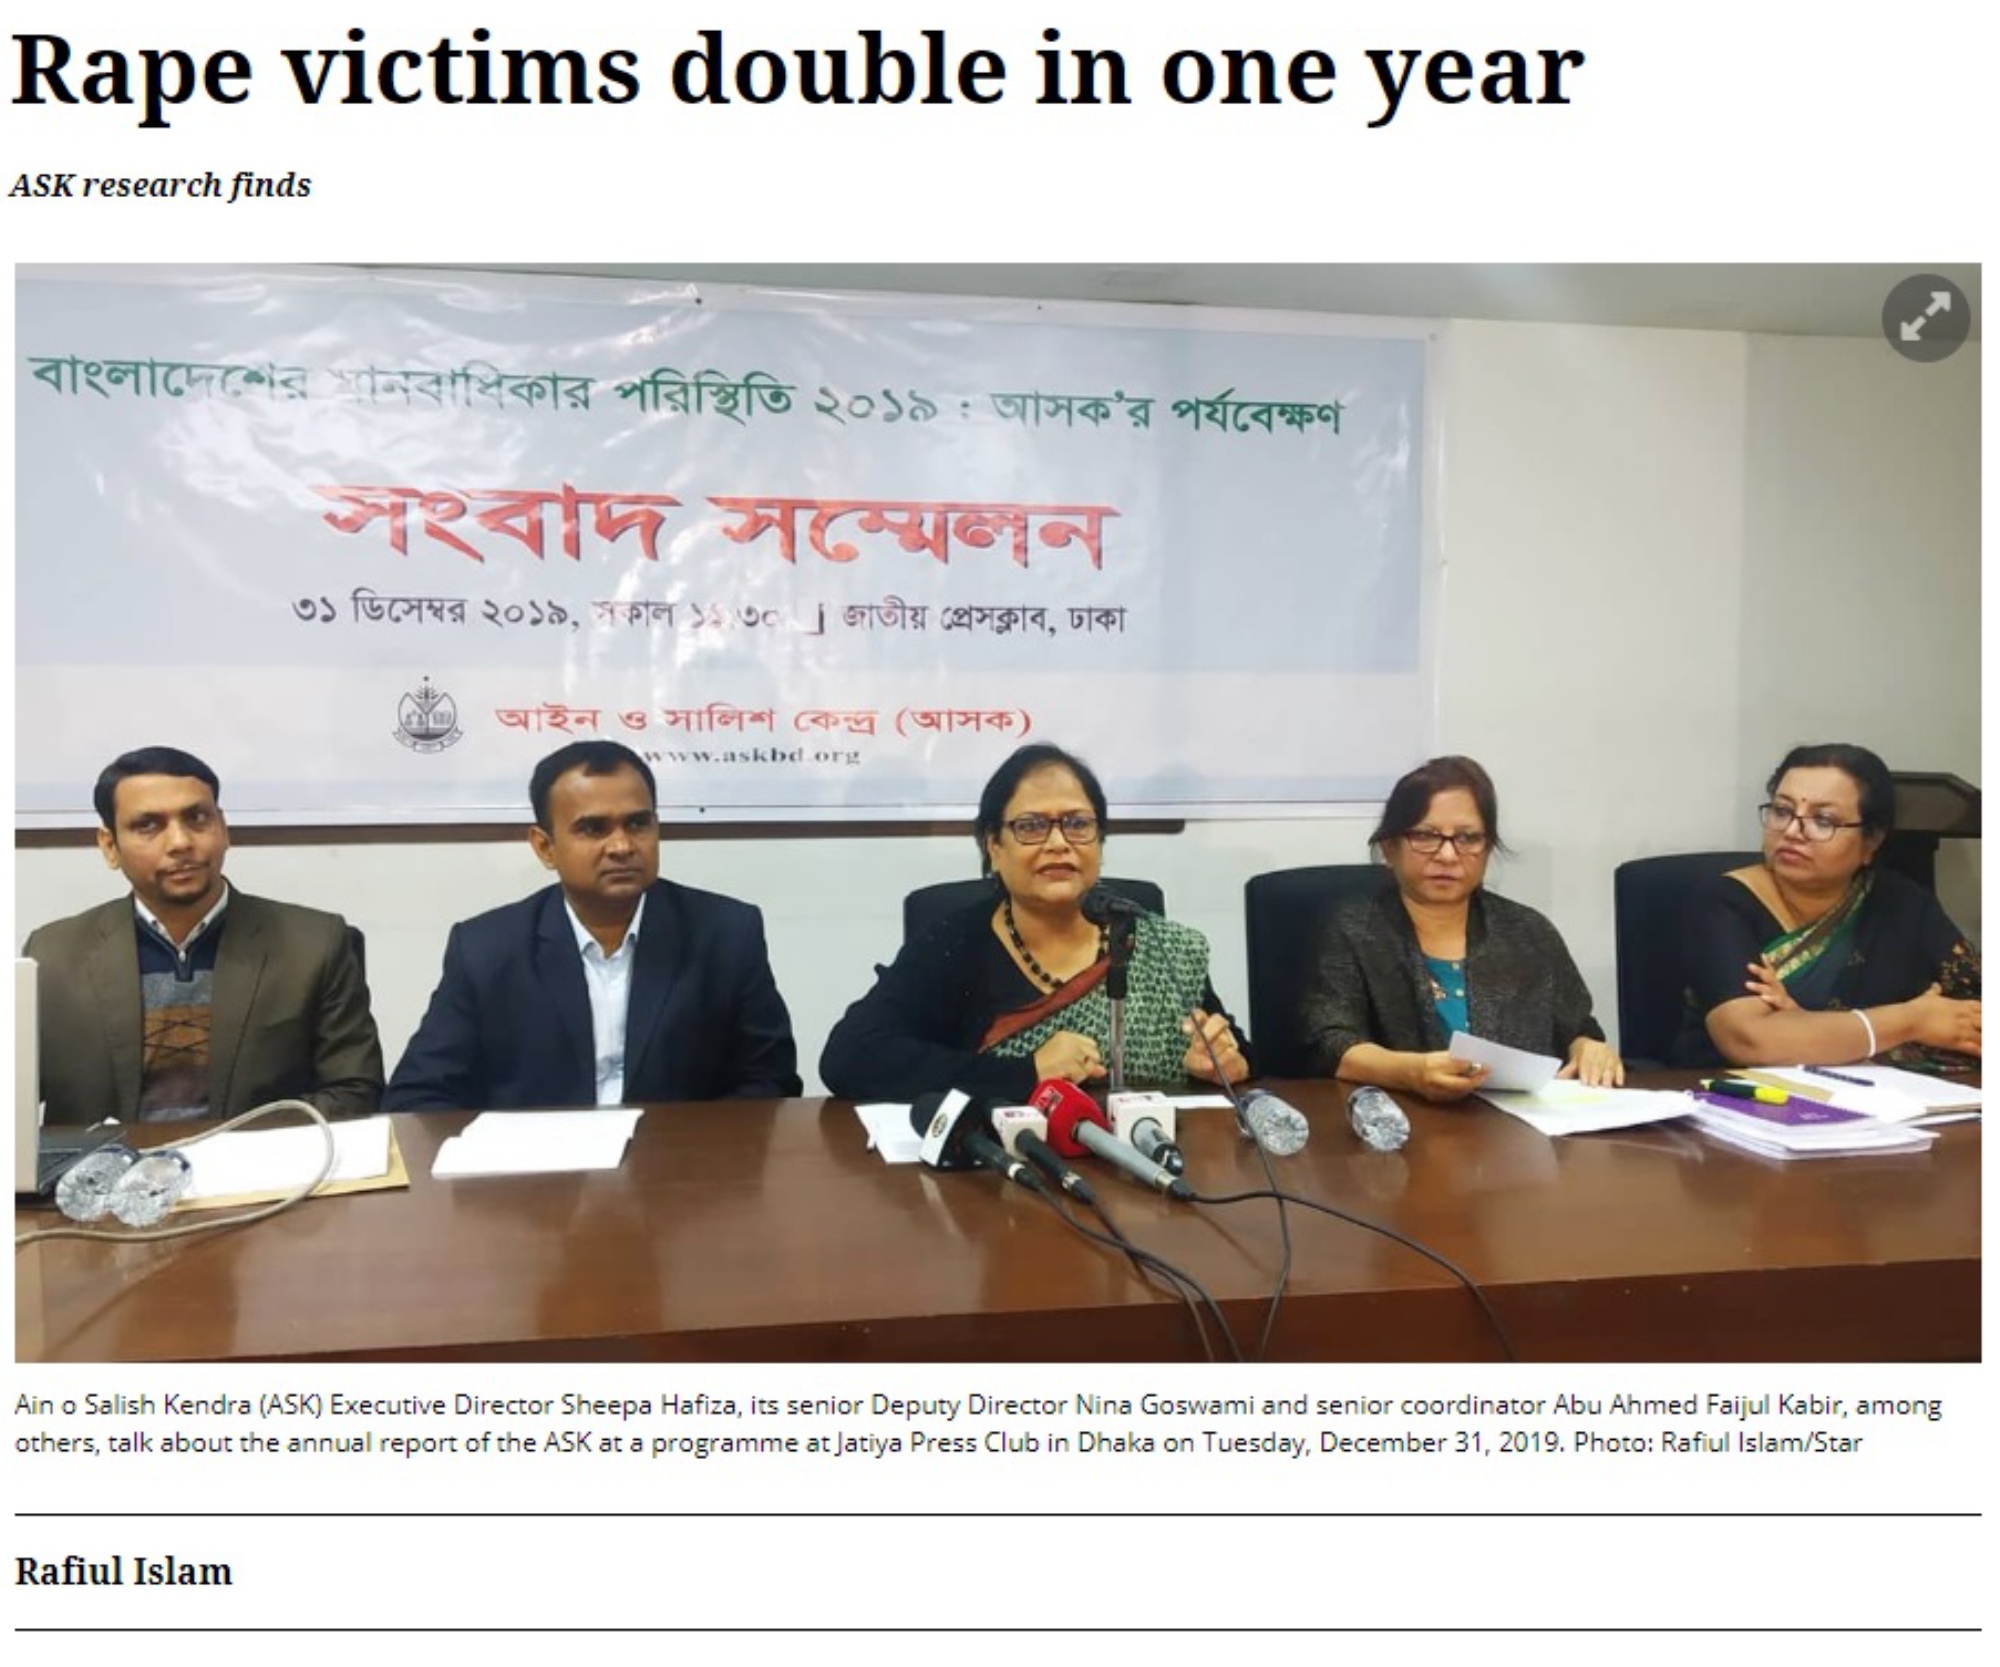 2019年のバングラデシュでのレイプ被害者数は1413人－前年から被害者数が倍増－